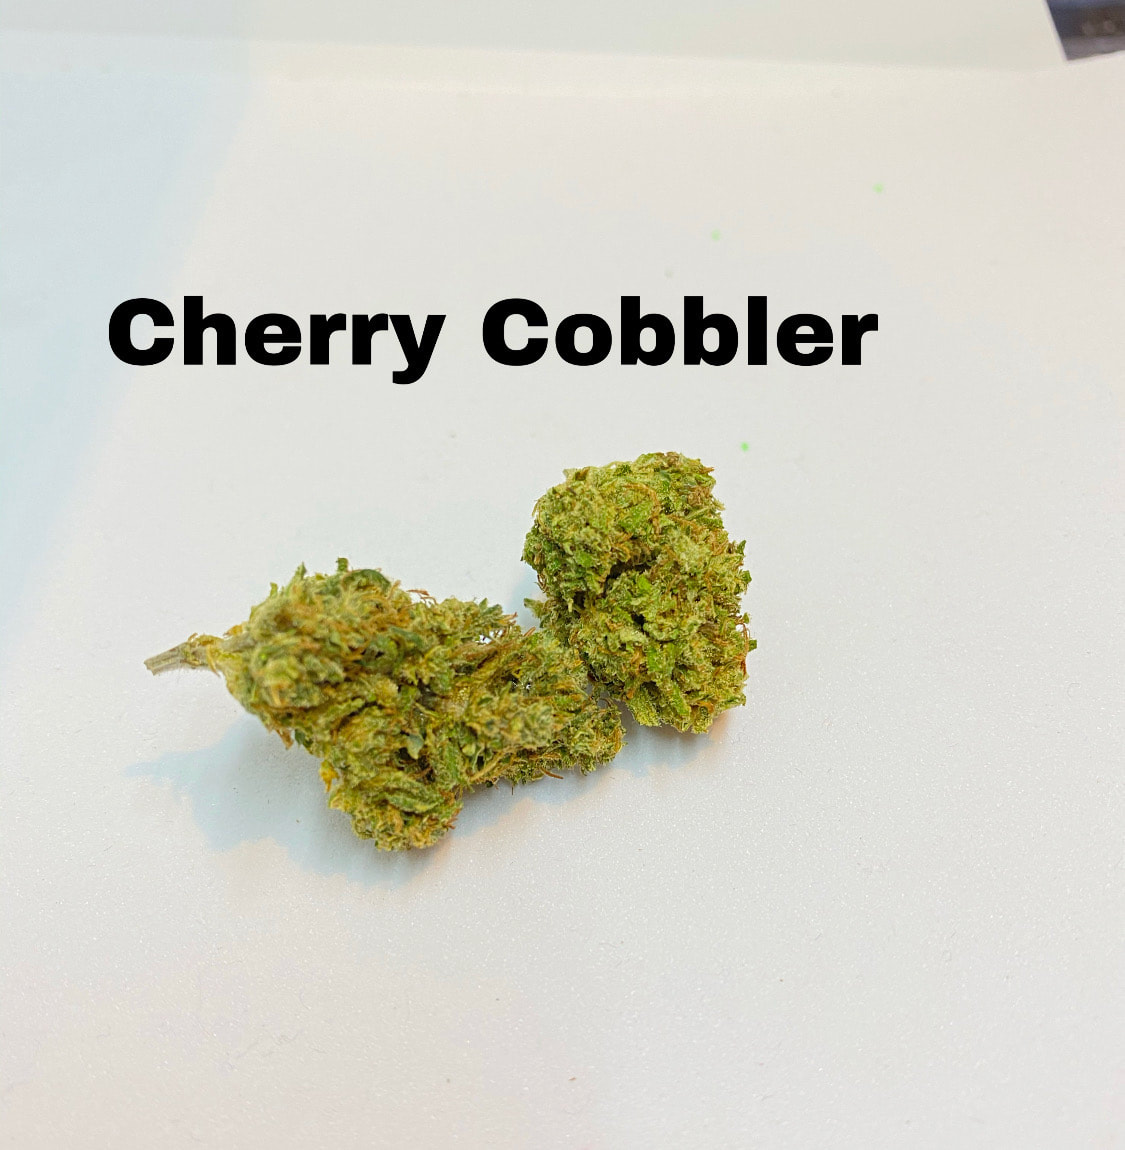 Cherry Cobbler CBD Hemp Flower